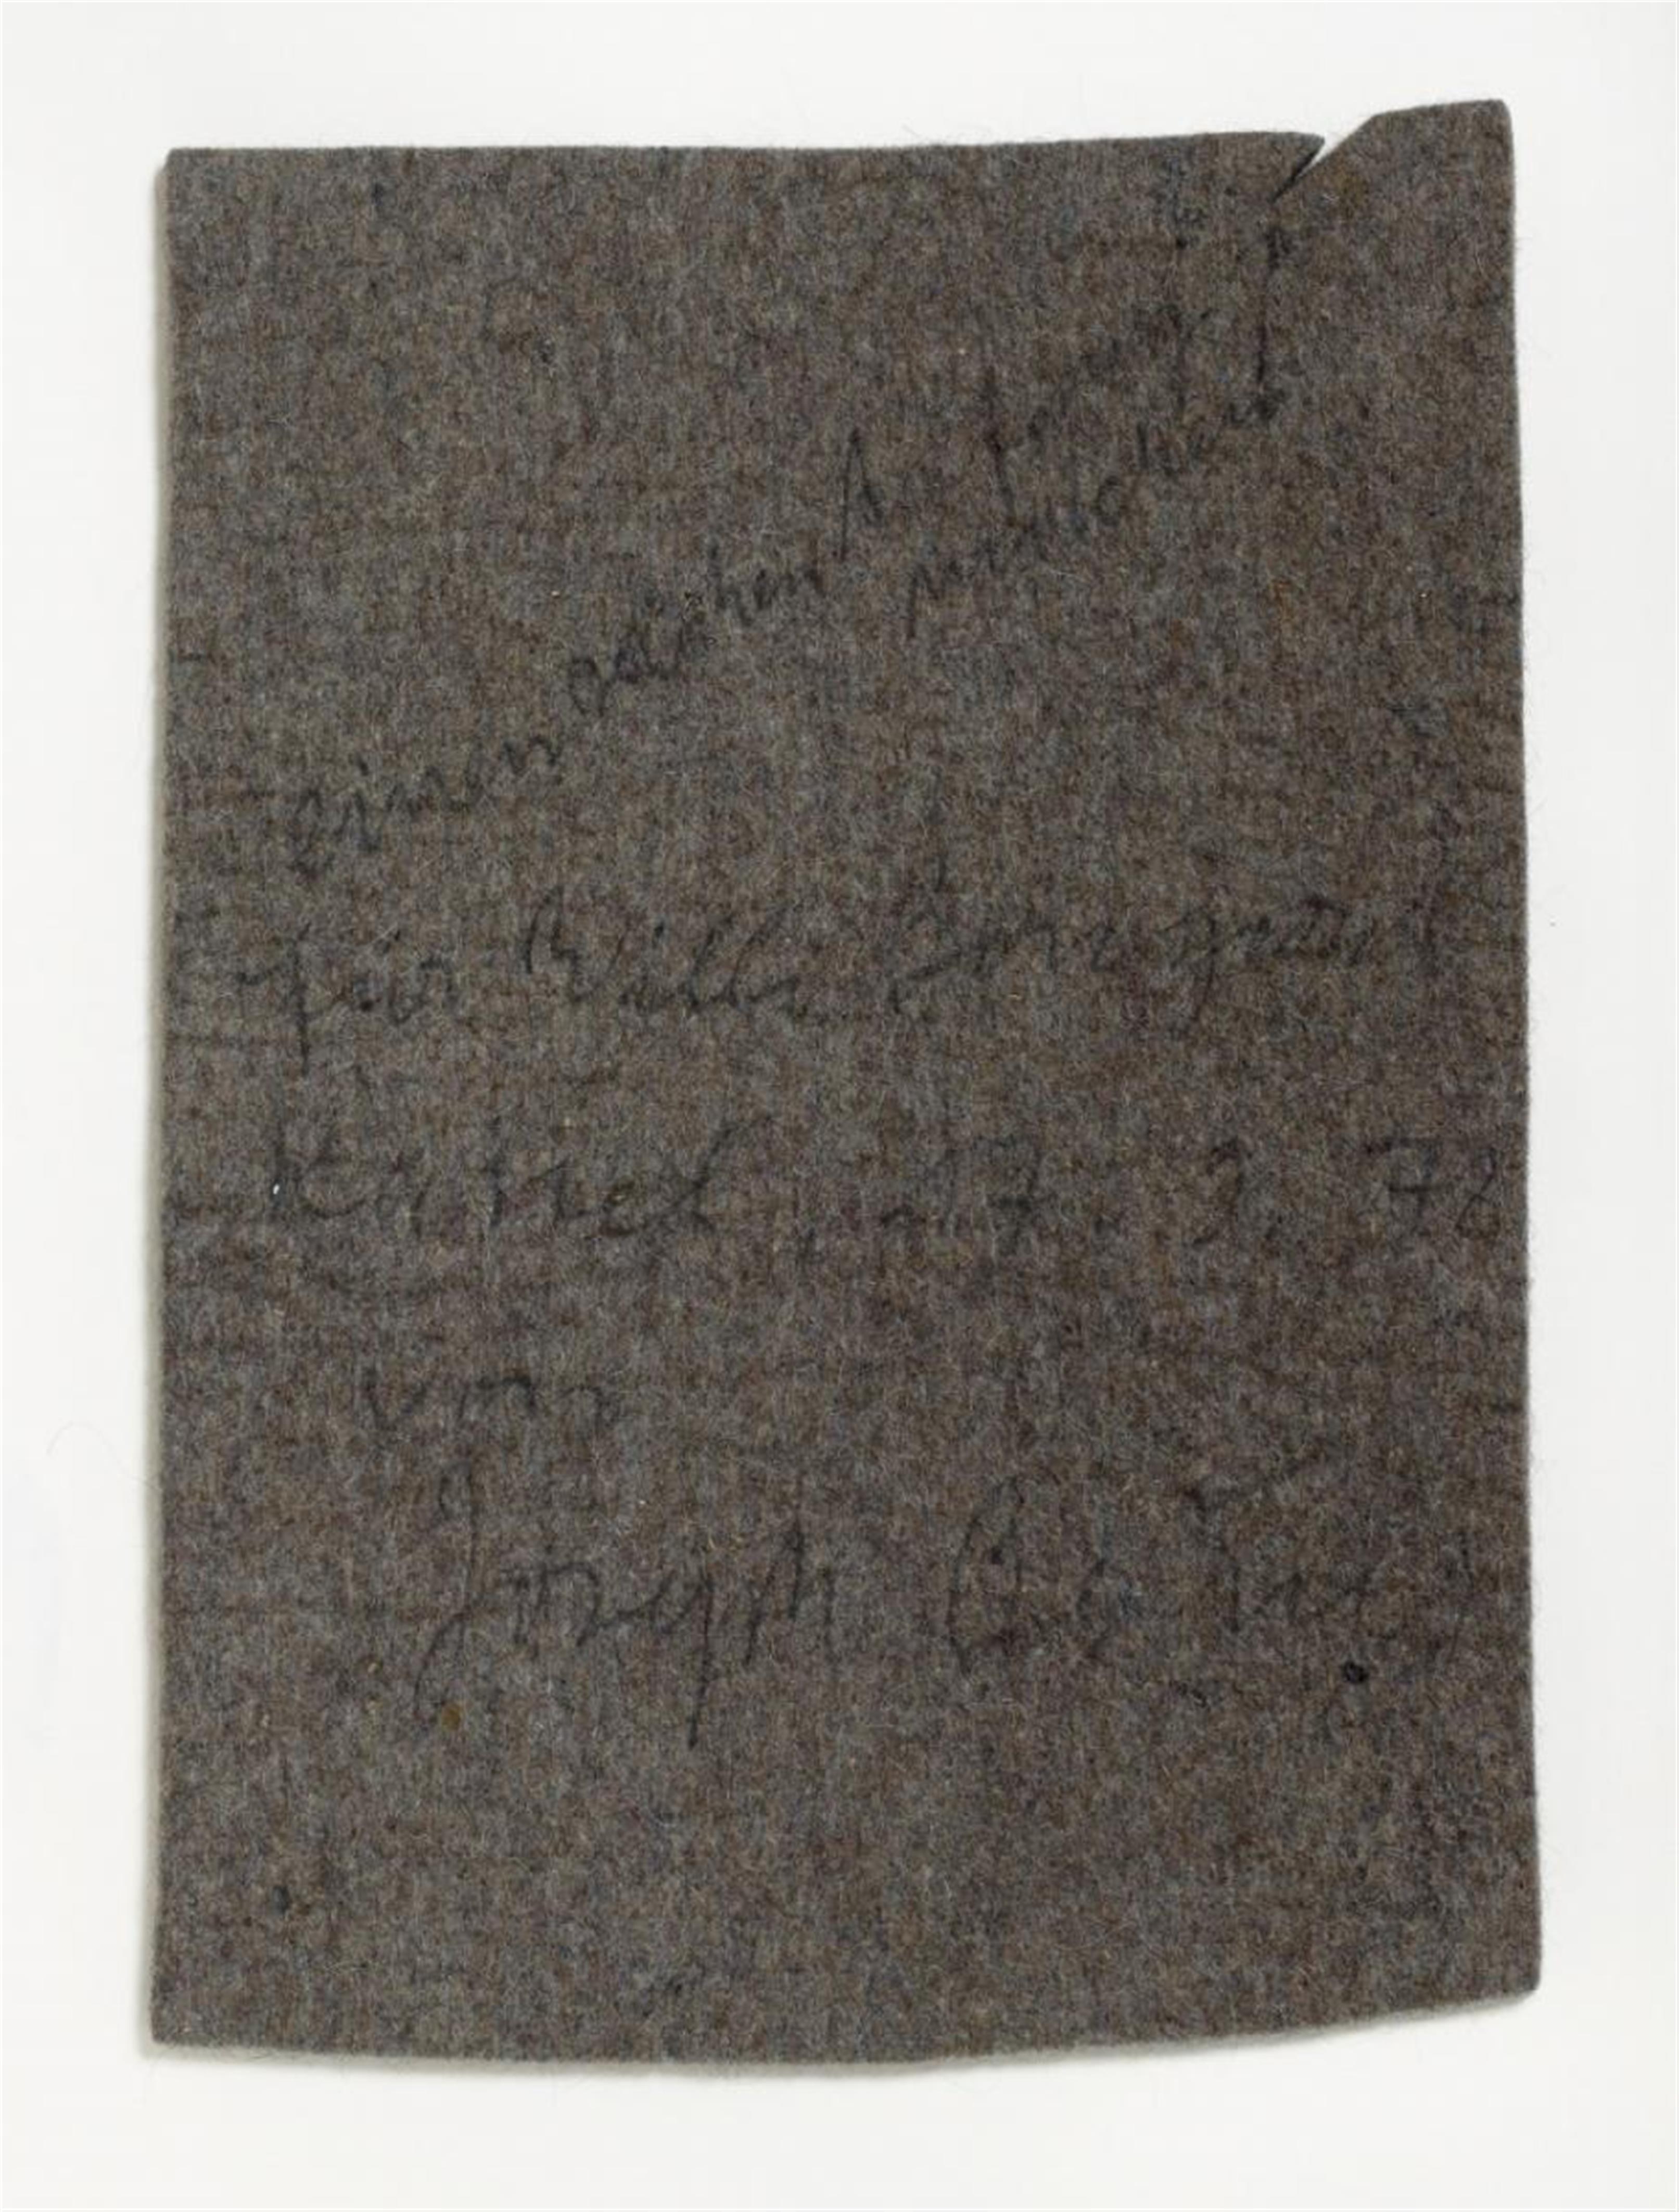 Joseph Beuys - Ohne Titel (So kann die Parteiendiktatur überwunden werden) - image-1